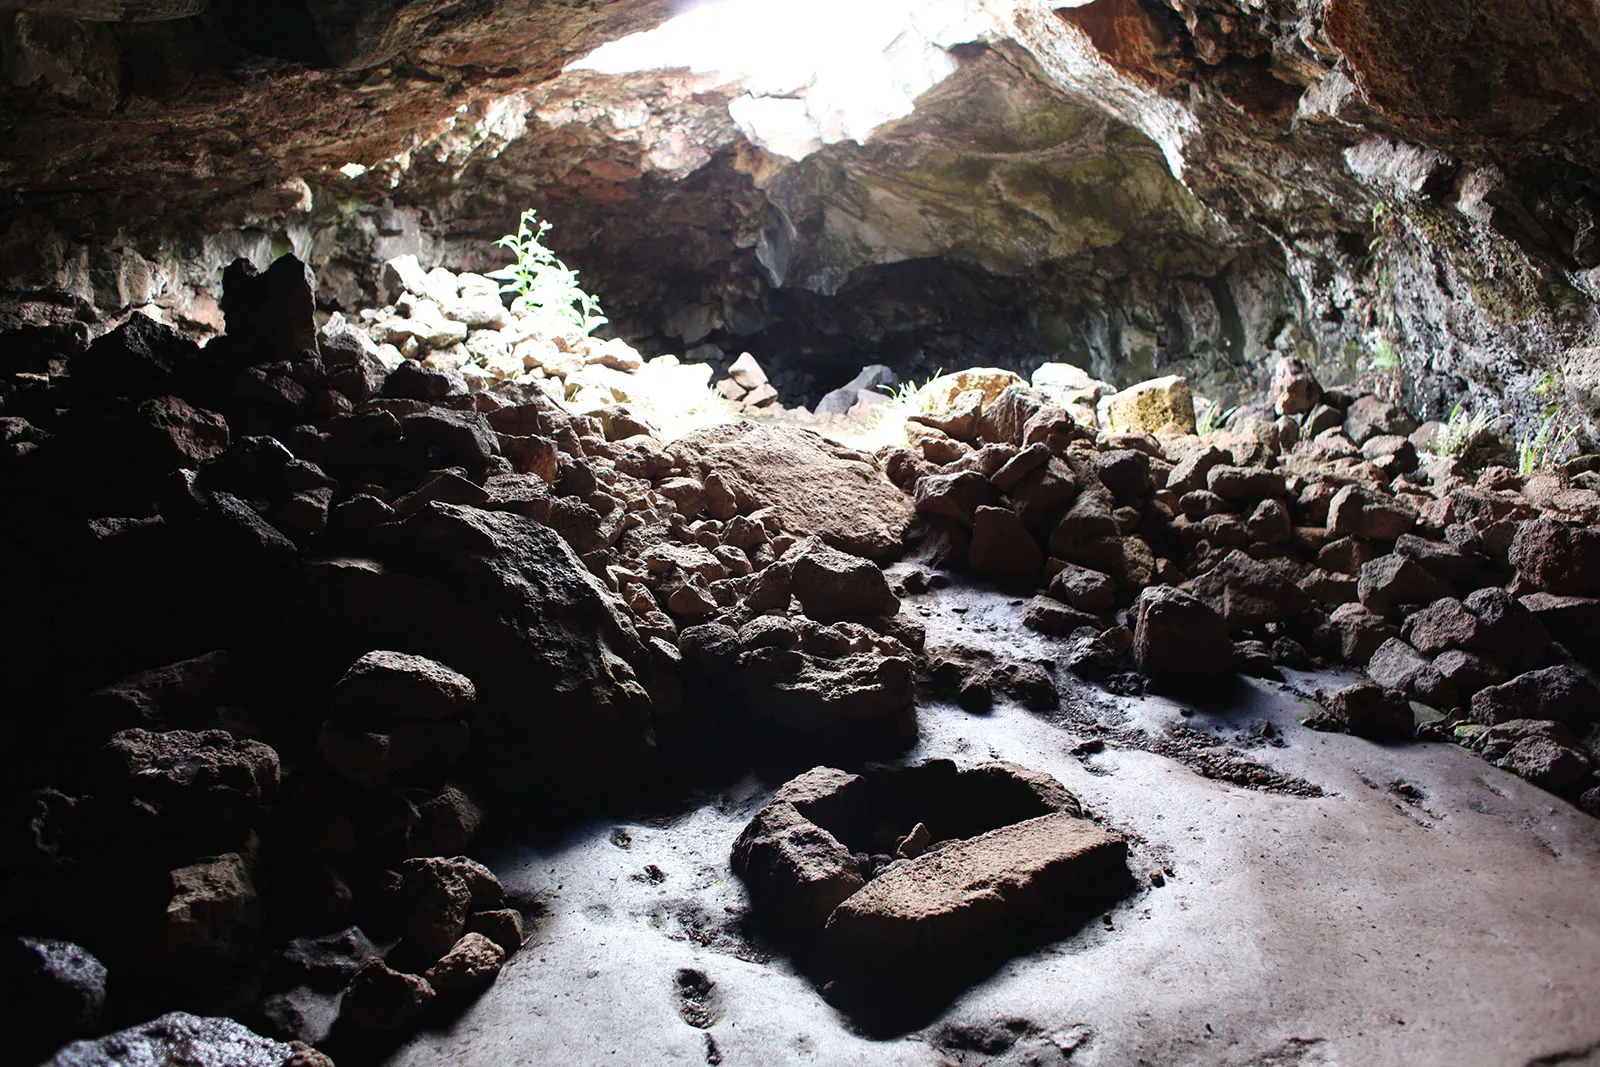 Jaskinia Umu pae i widoczne w jej wnętrzu podziemne palenisko (fot. Maciej Sobczyk)